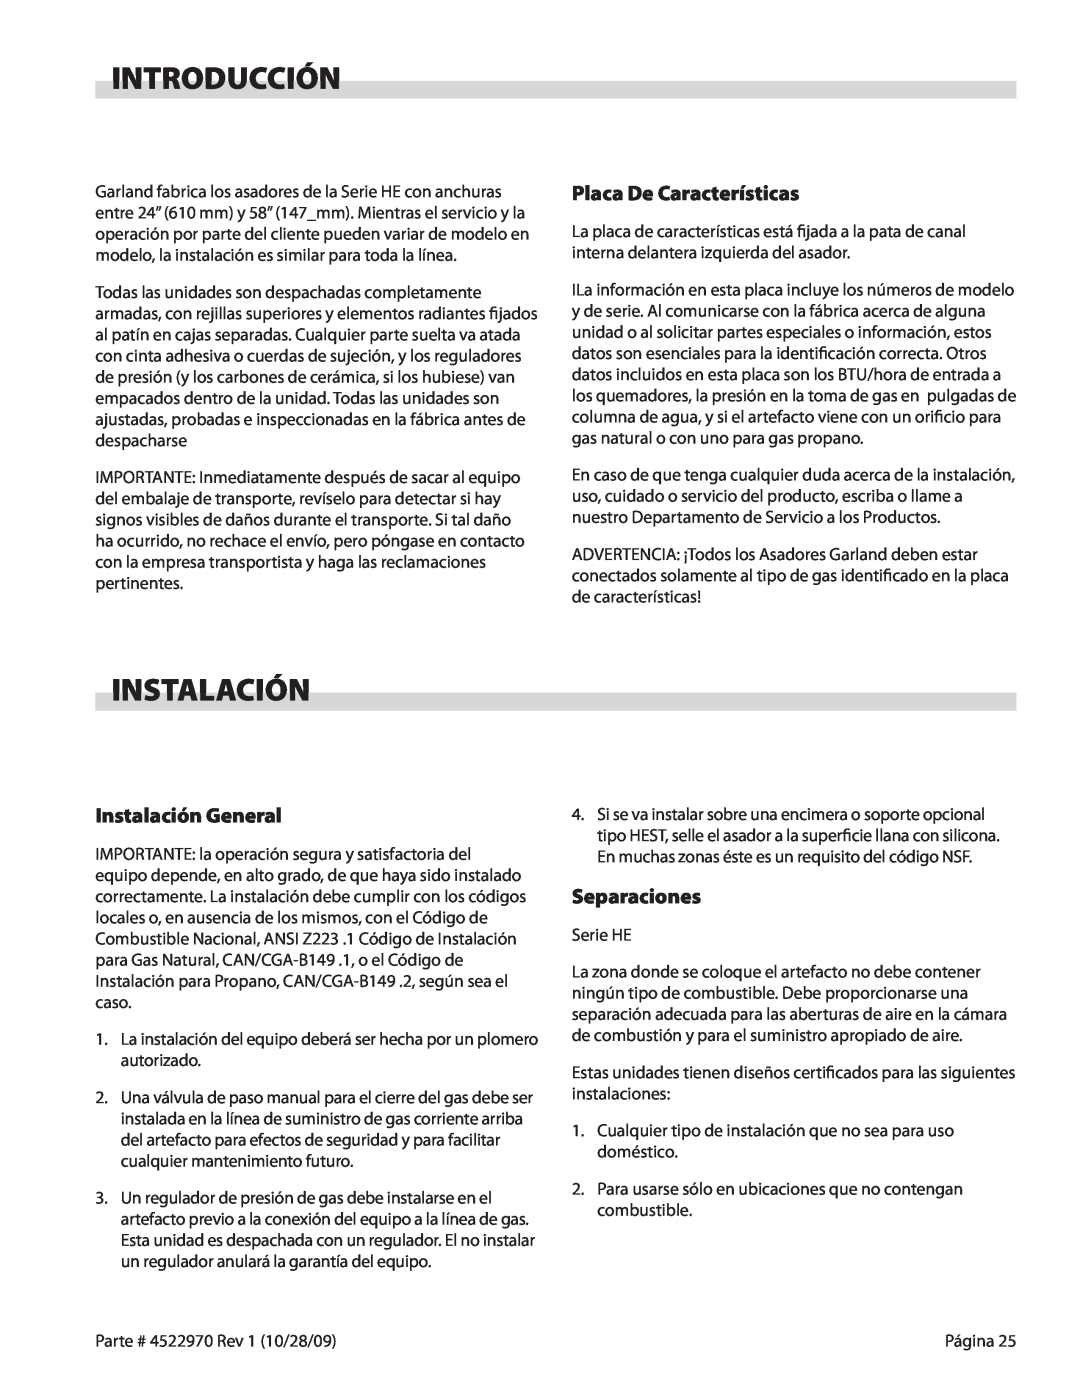 Garland 4522970 REV 1 operation manual Introducción, Placa De Características, Instalación General, Separaciones 